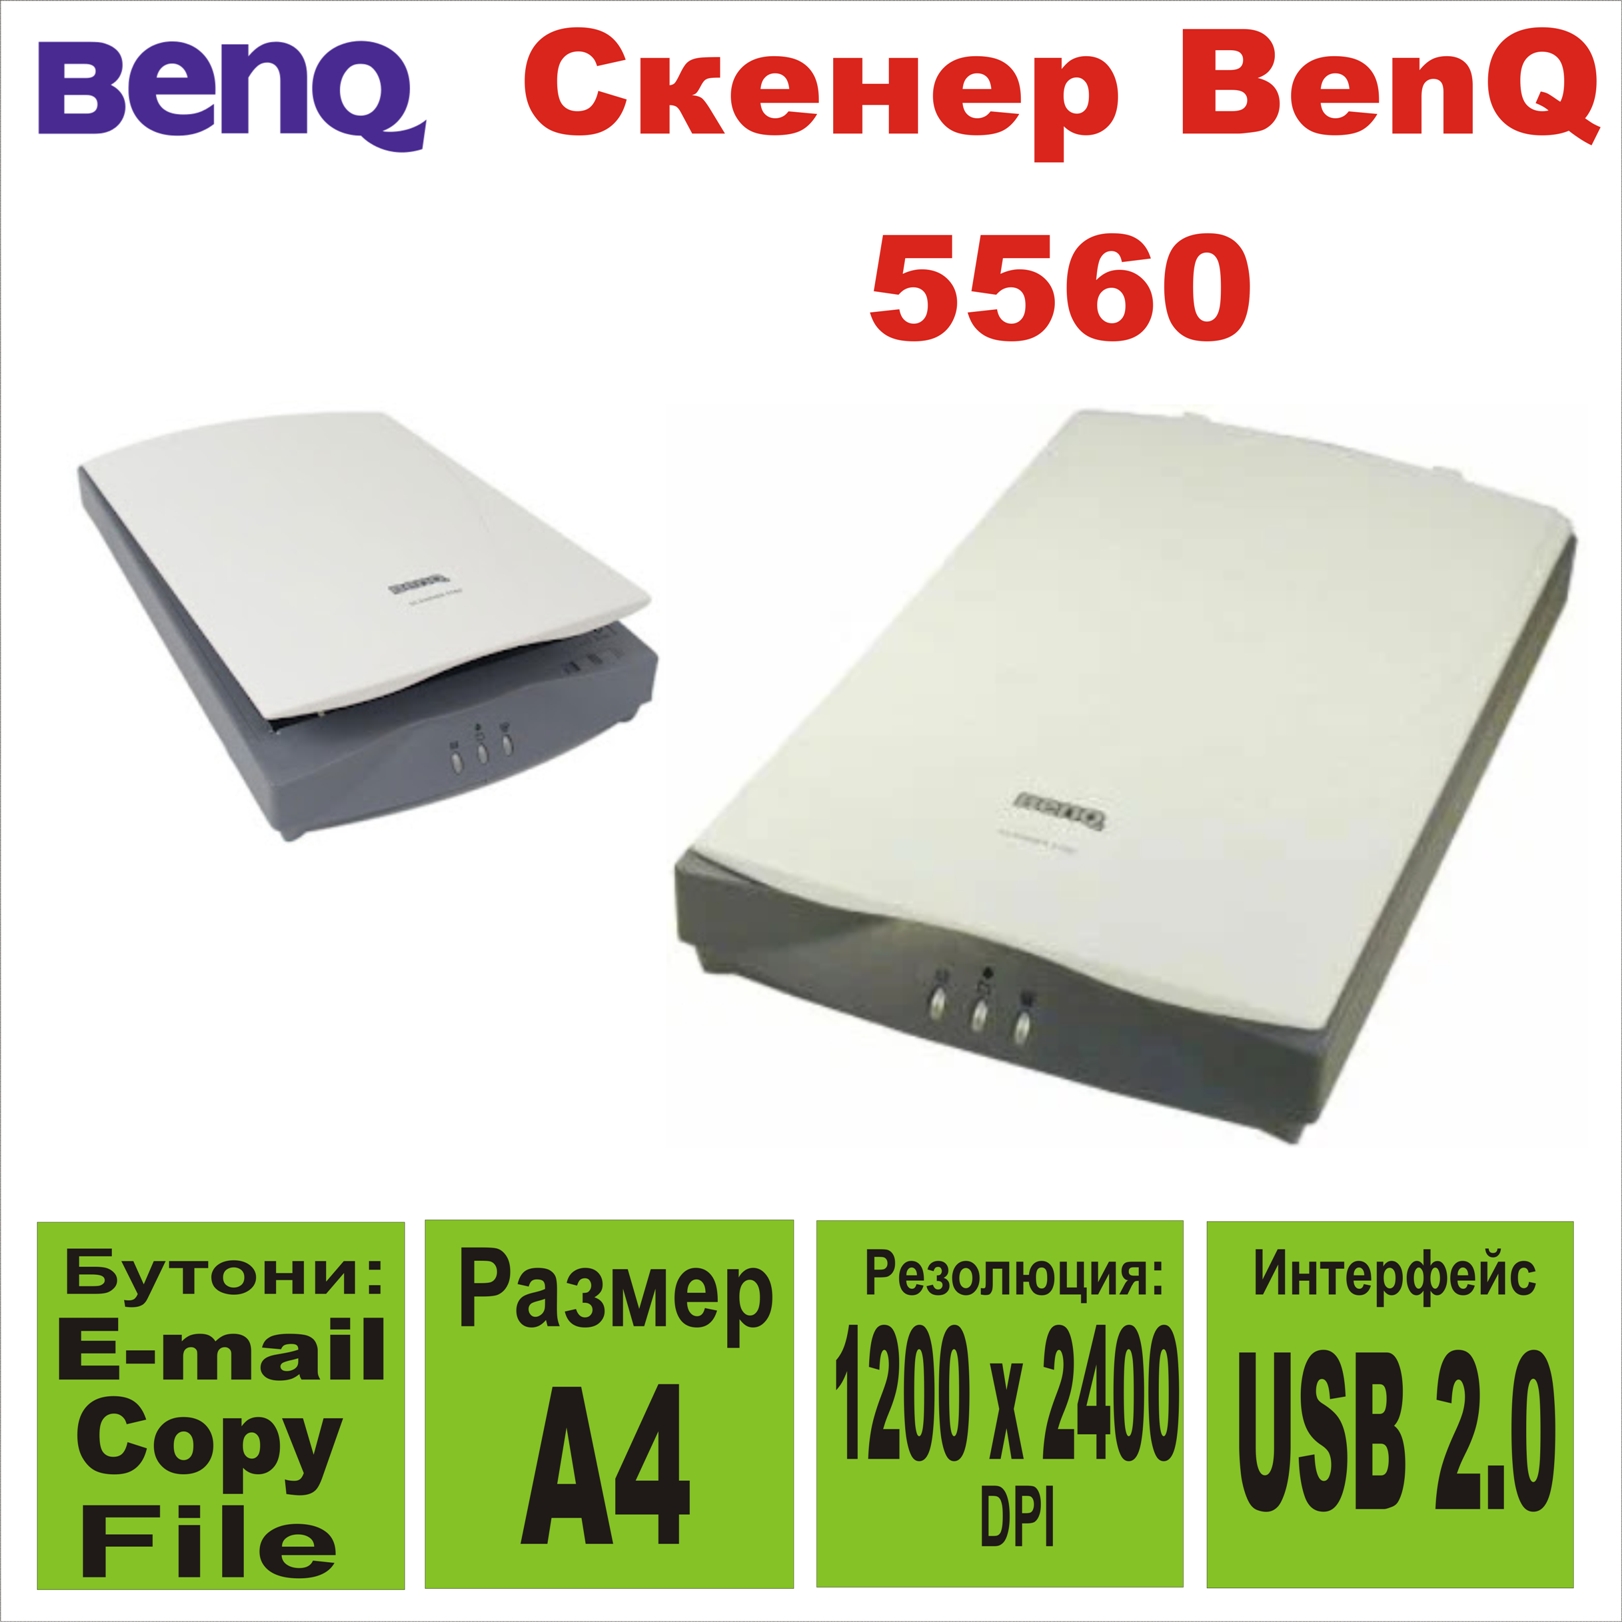 Скенер BenQ 5560